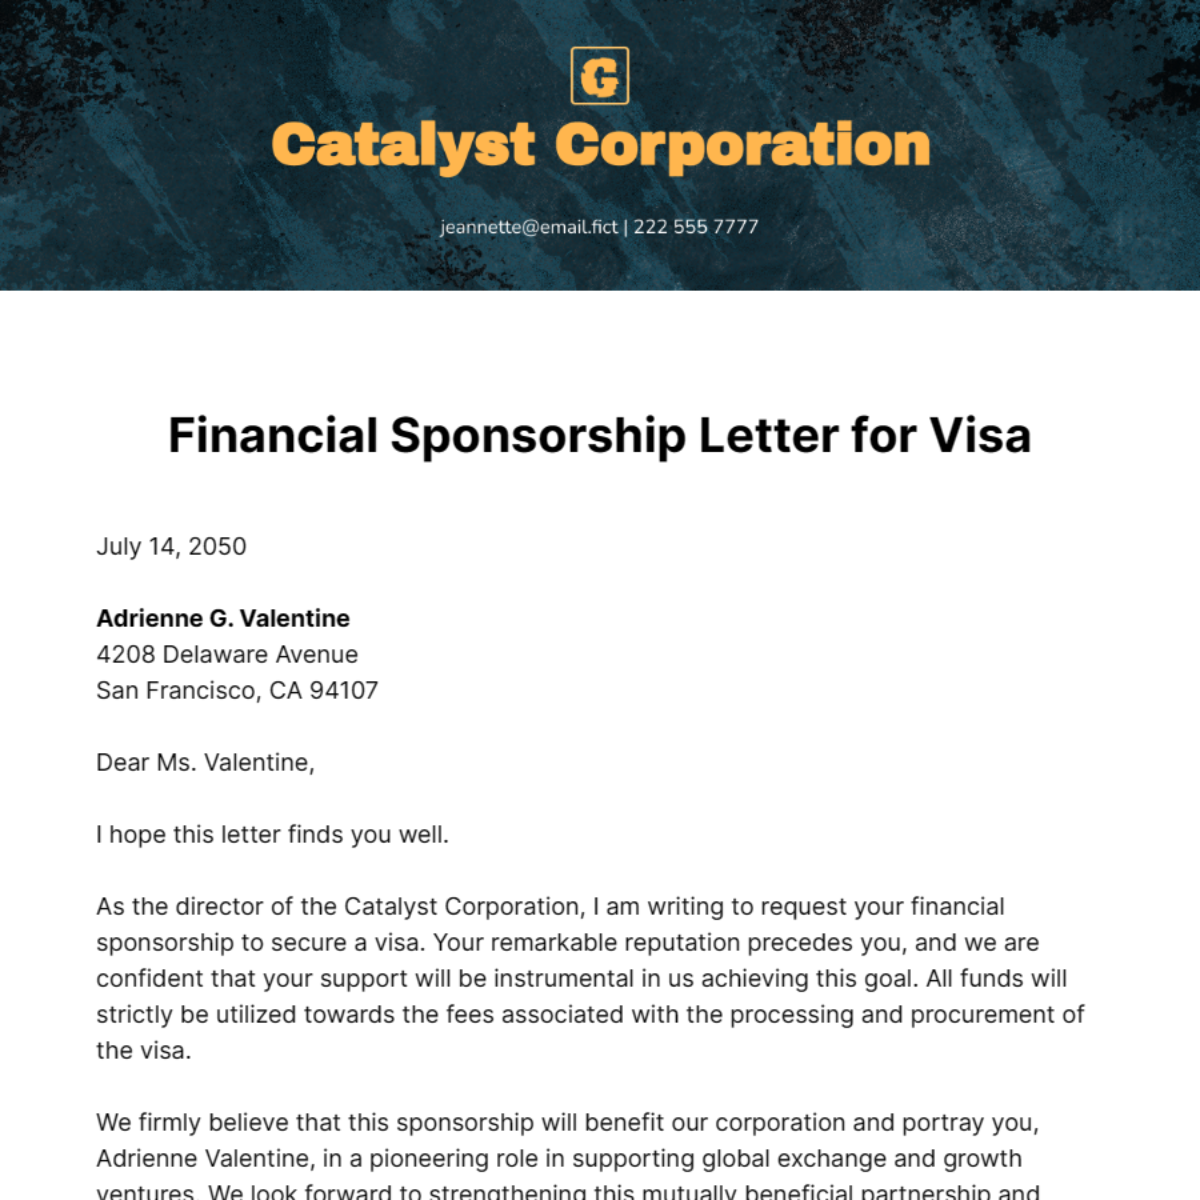 Financial Sponsorship Letter for Visa Template